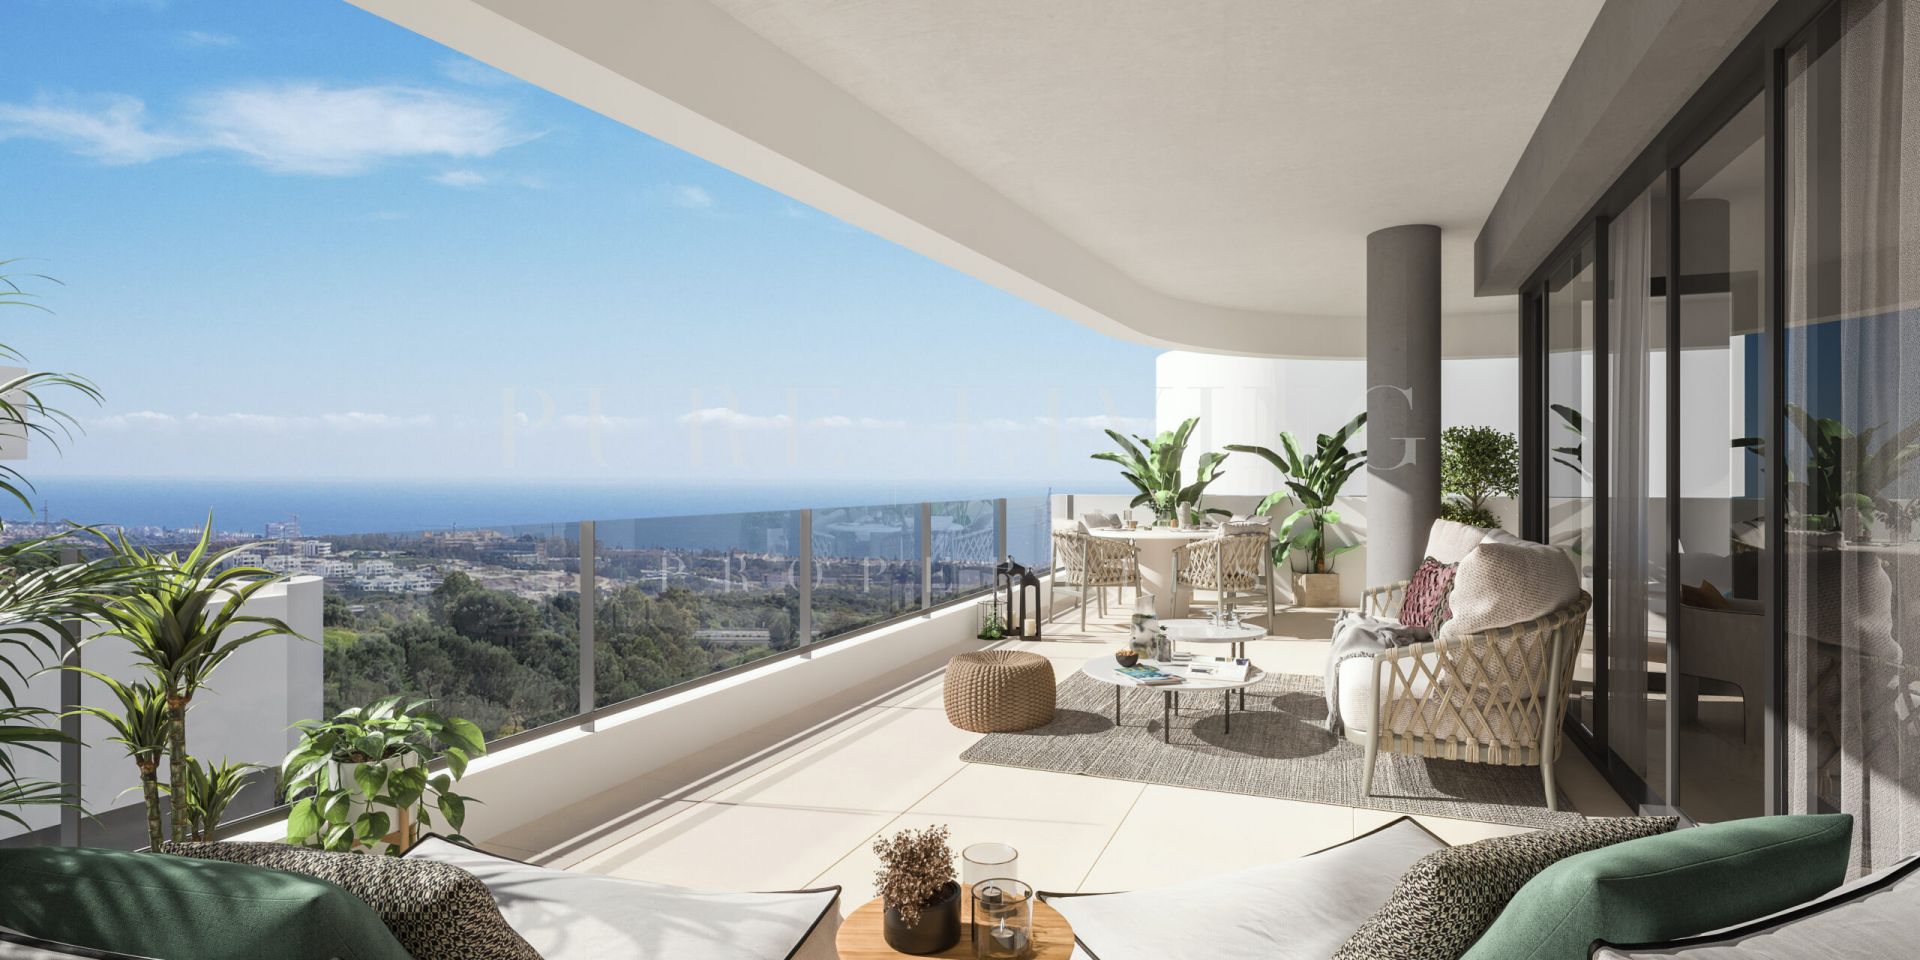 Stunning apartment with breathtaking sea views, located in Altos de Los Monteros